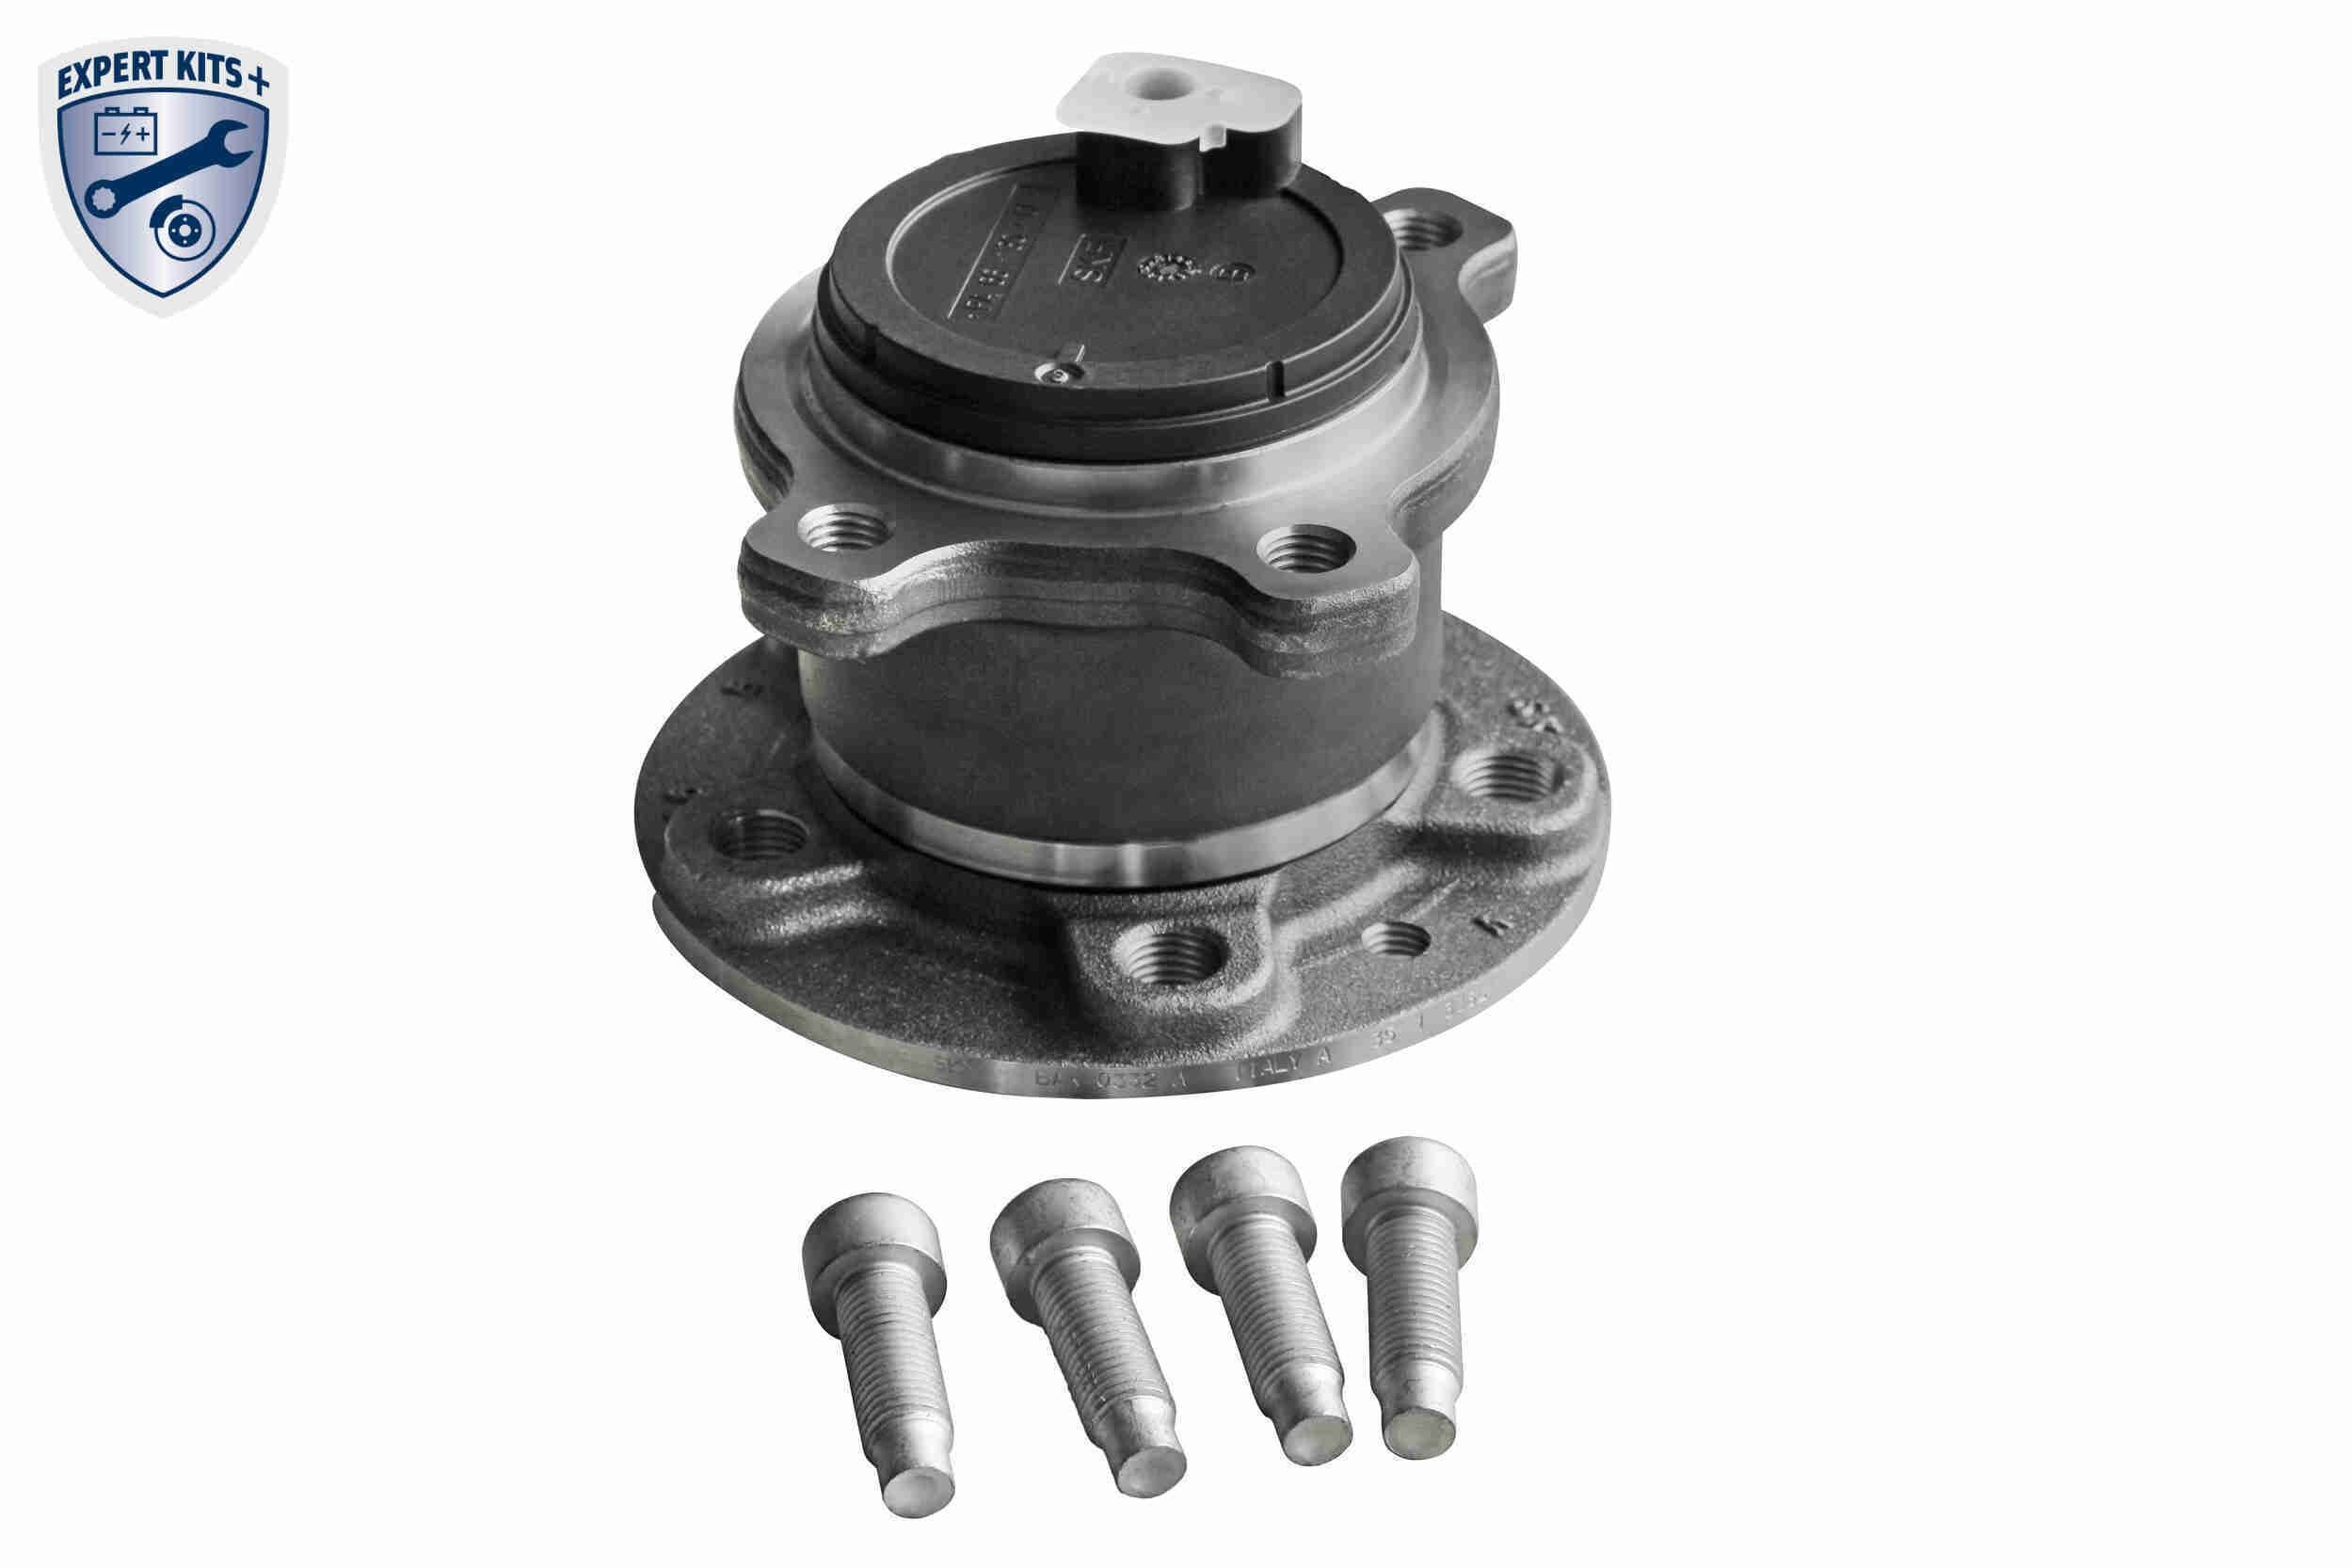 VAICO V95-0323 Wheel bearing kit Rear Axle, EXPERT KITS +, 136 mm